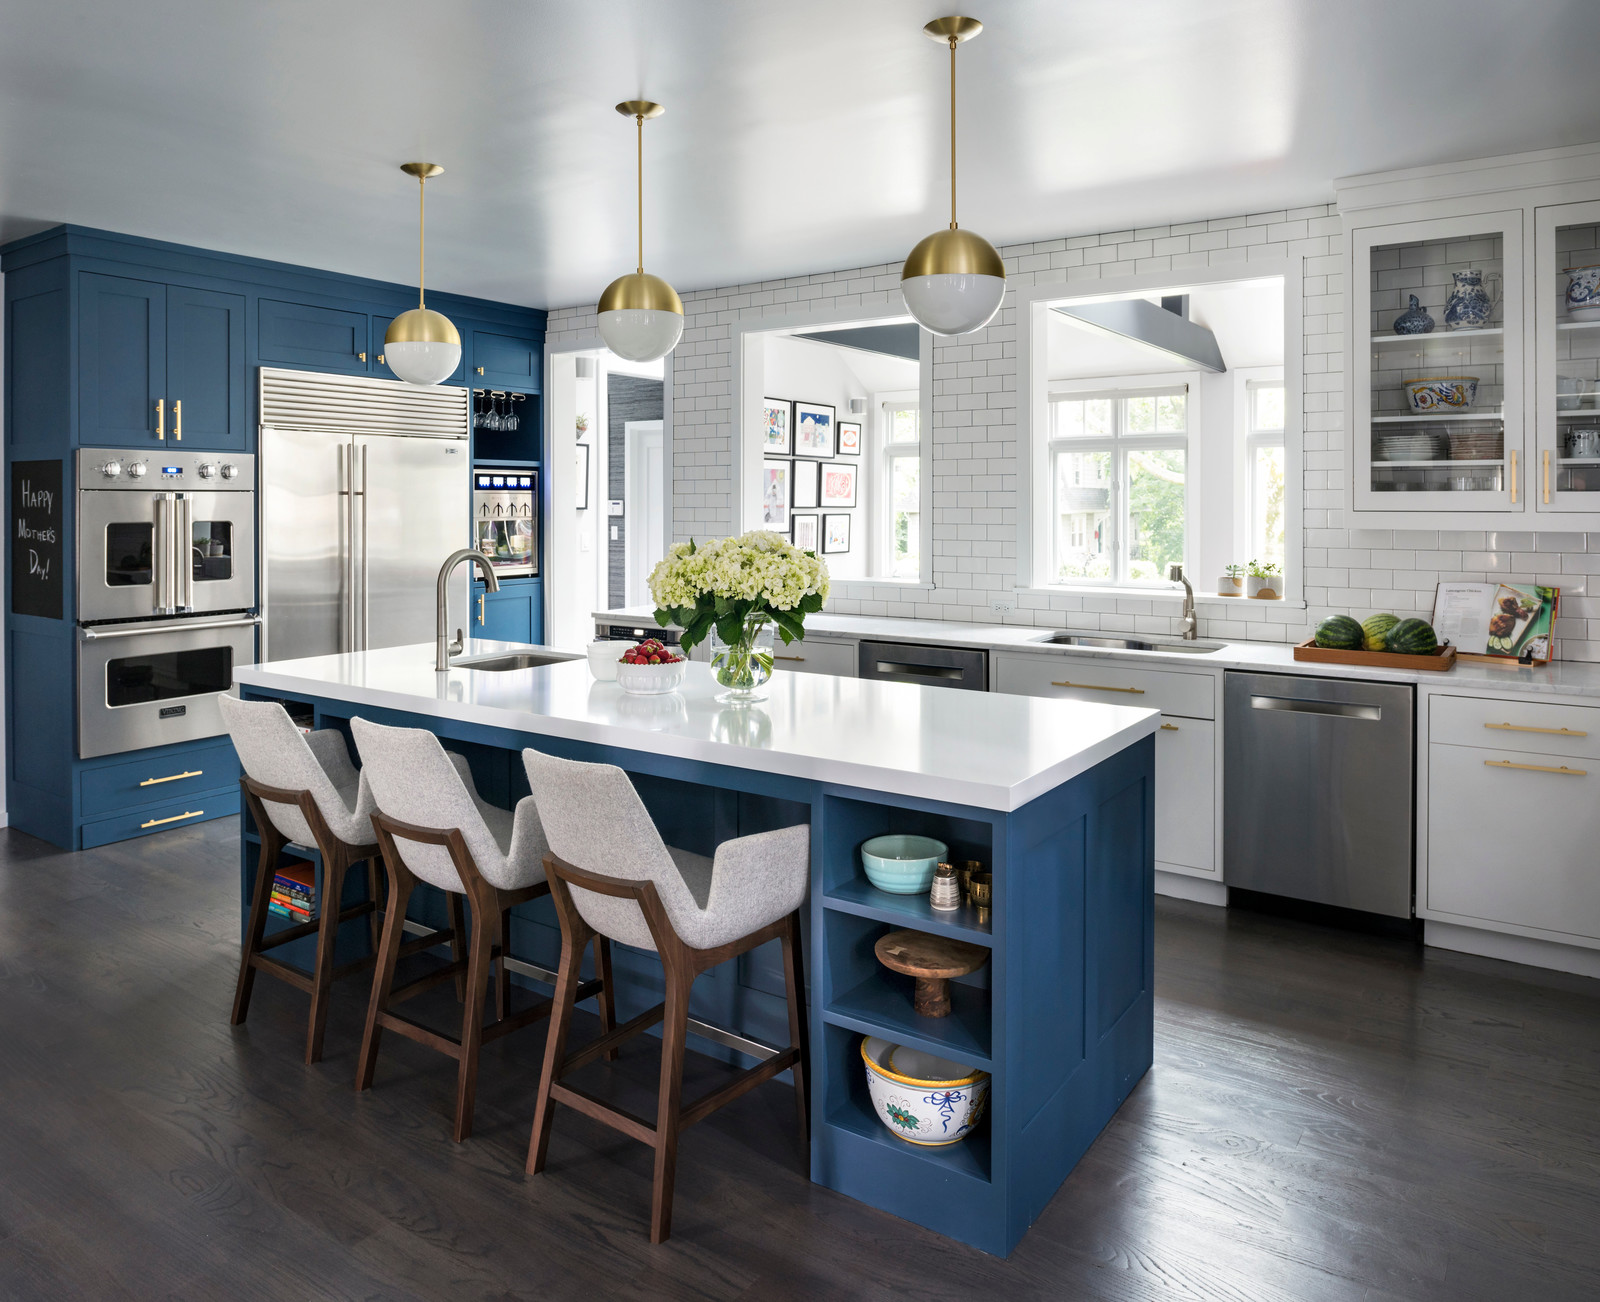 blue and white kitchen design